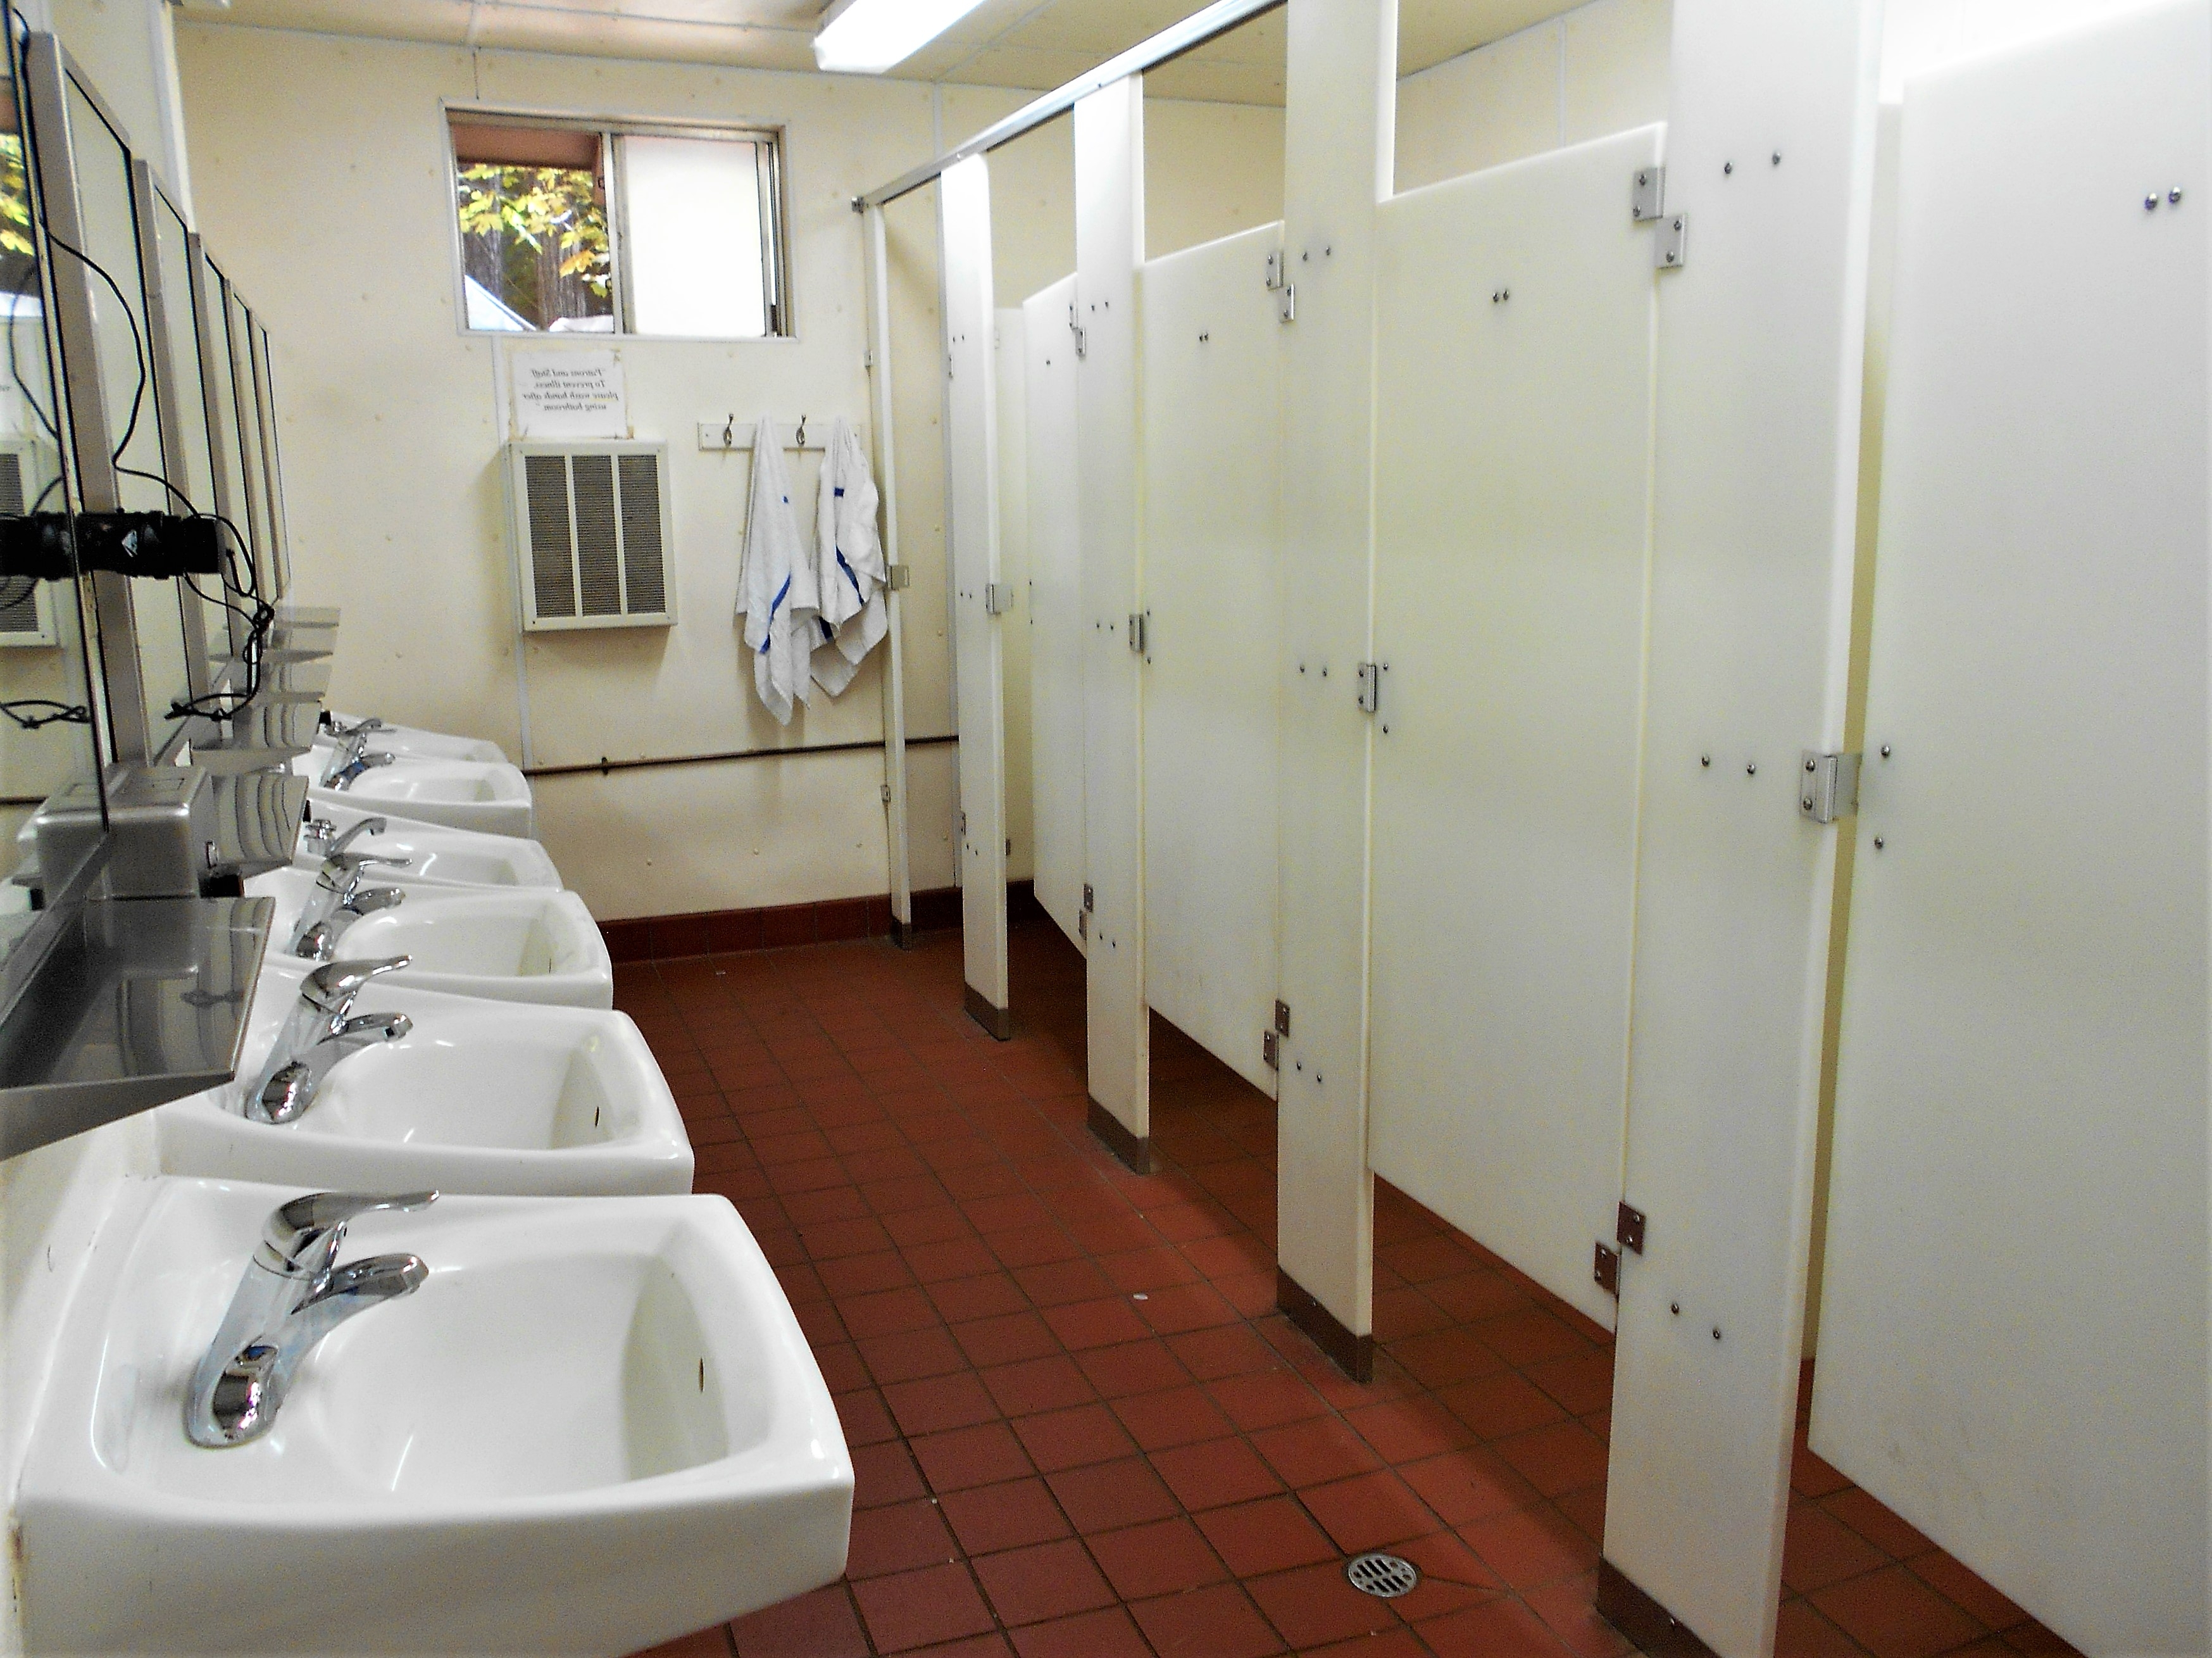 Public Restroom Facilities!